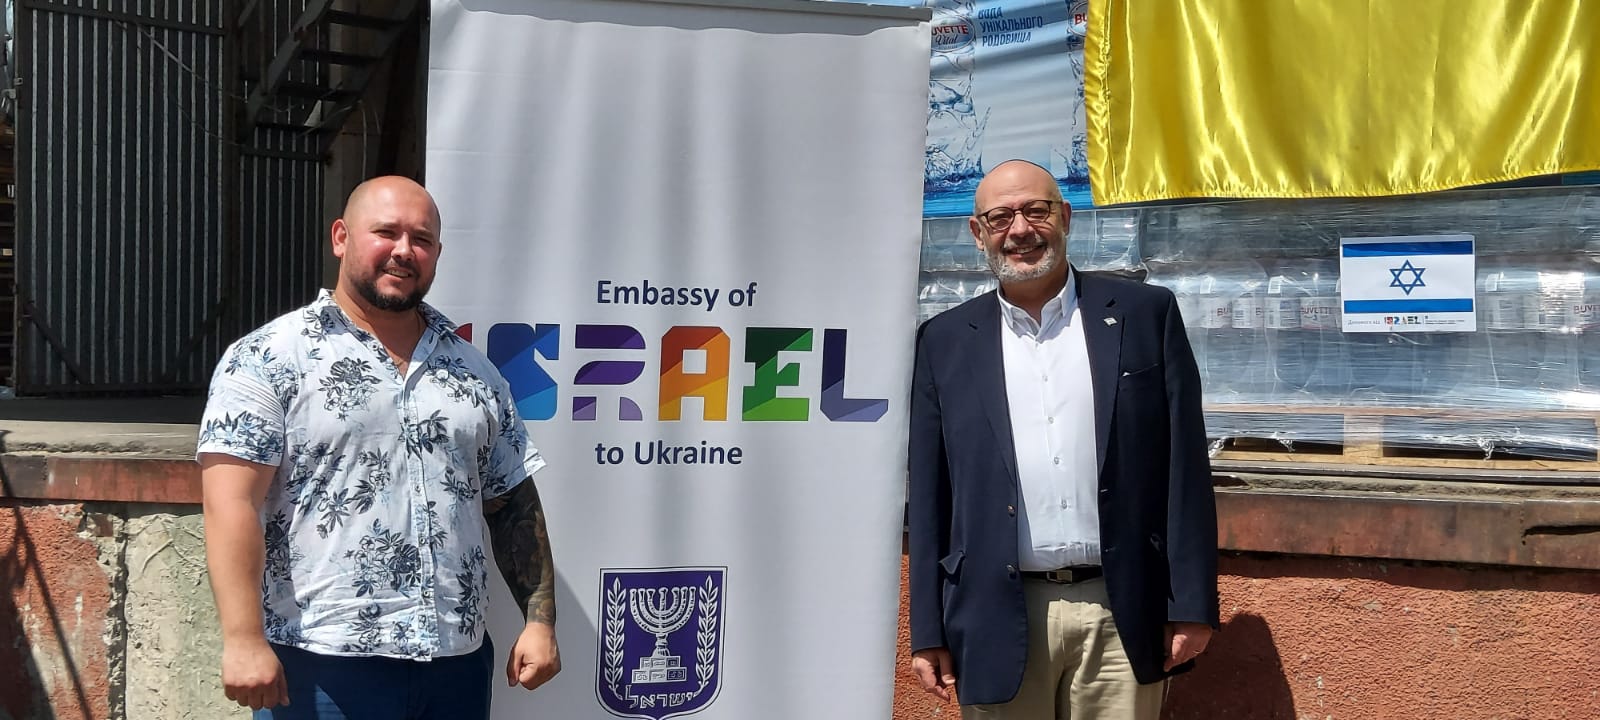 שגריר ישראל באוקראינה, ז'ואל ליאון, (צילום שגרירות ישראל)